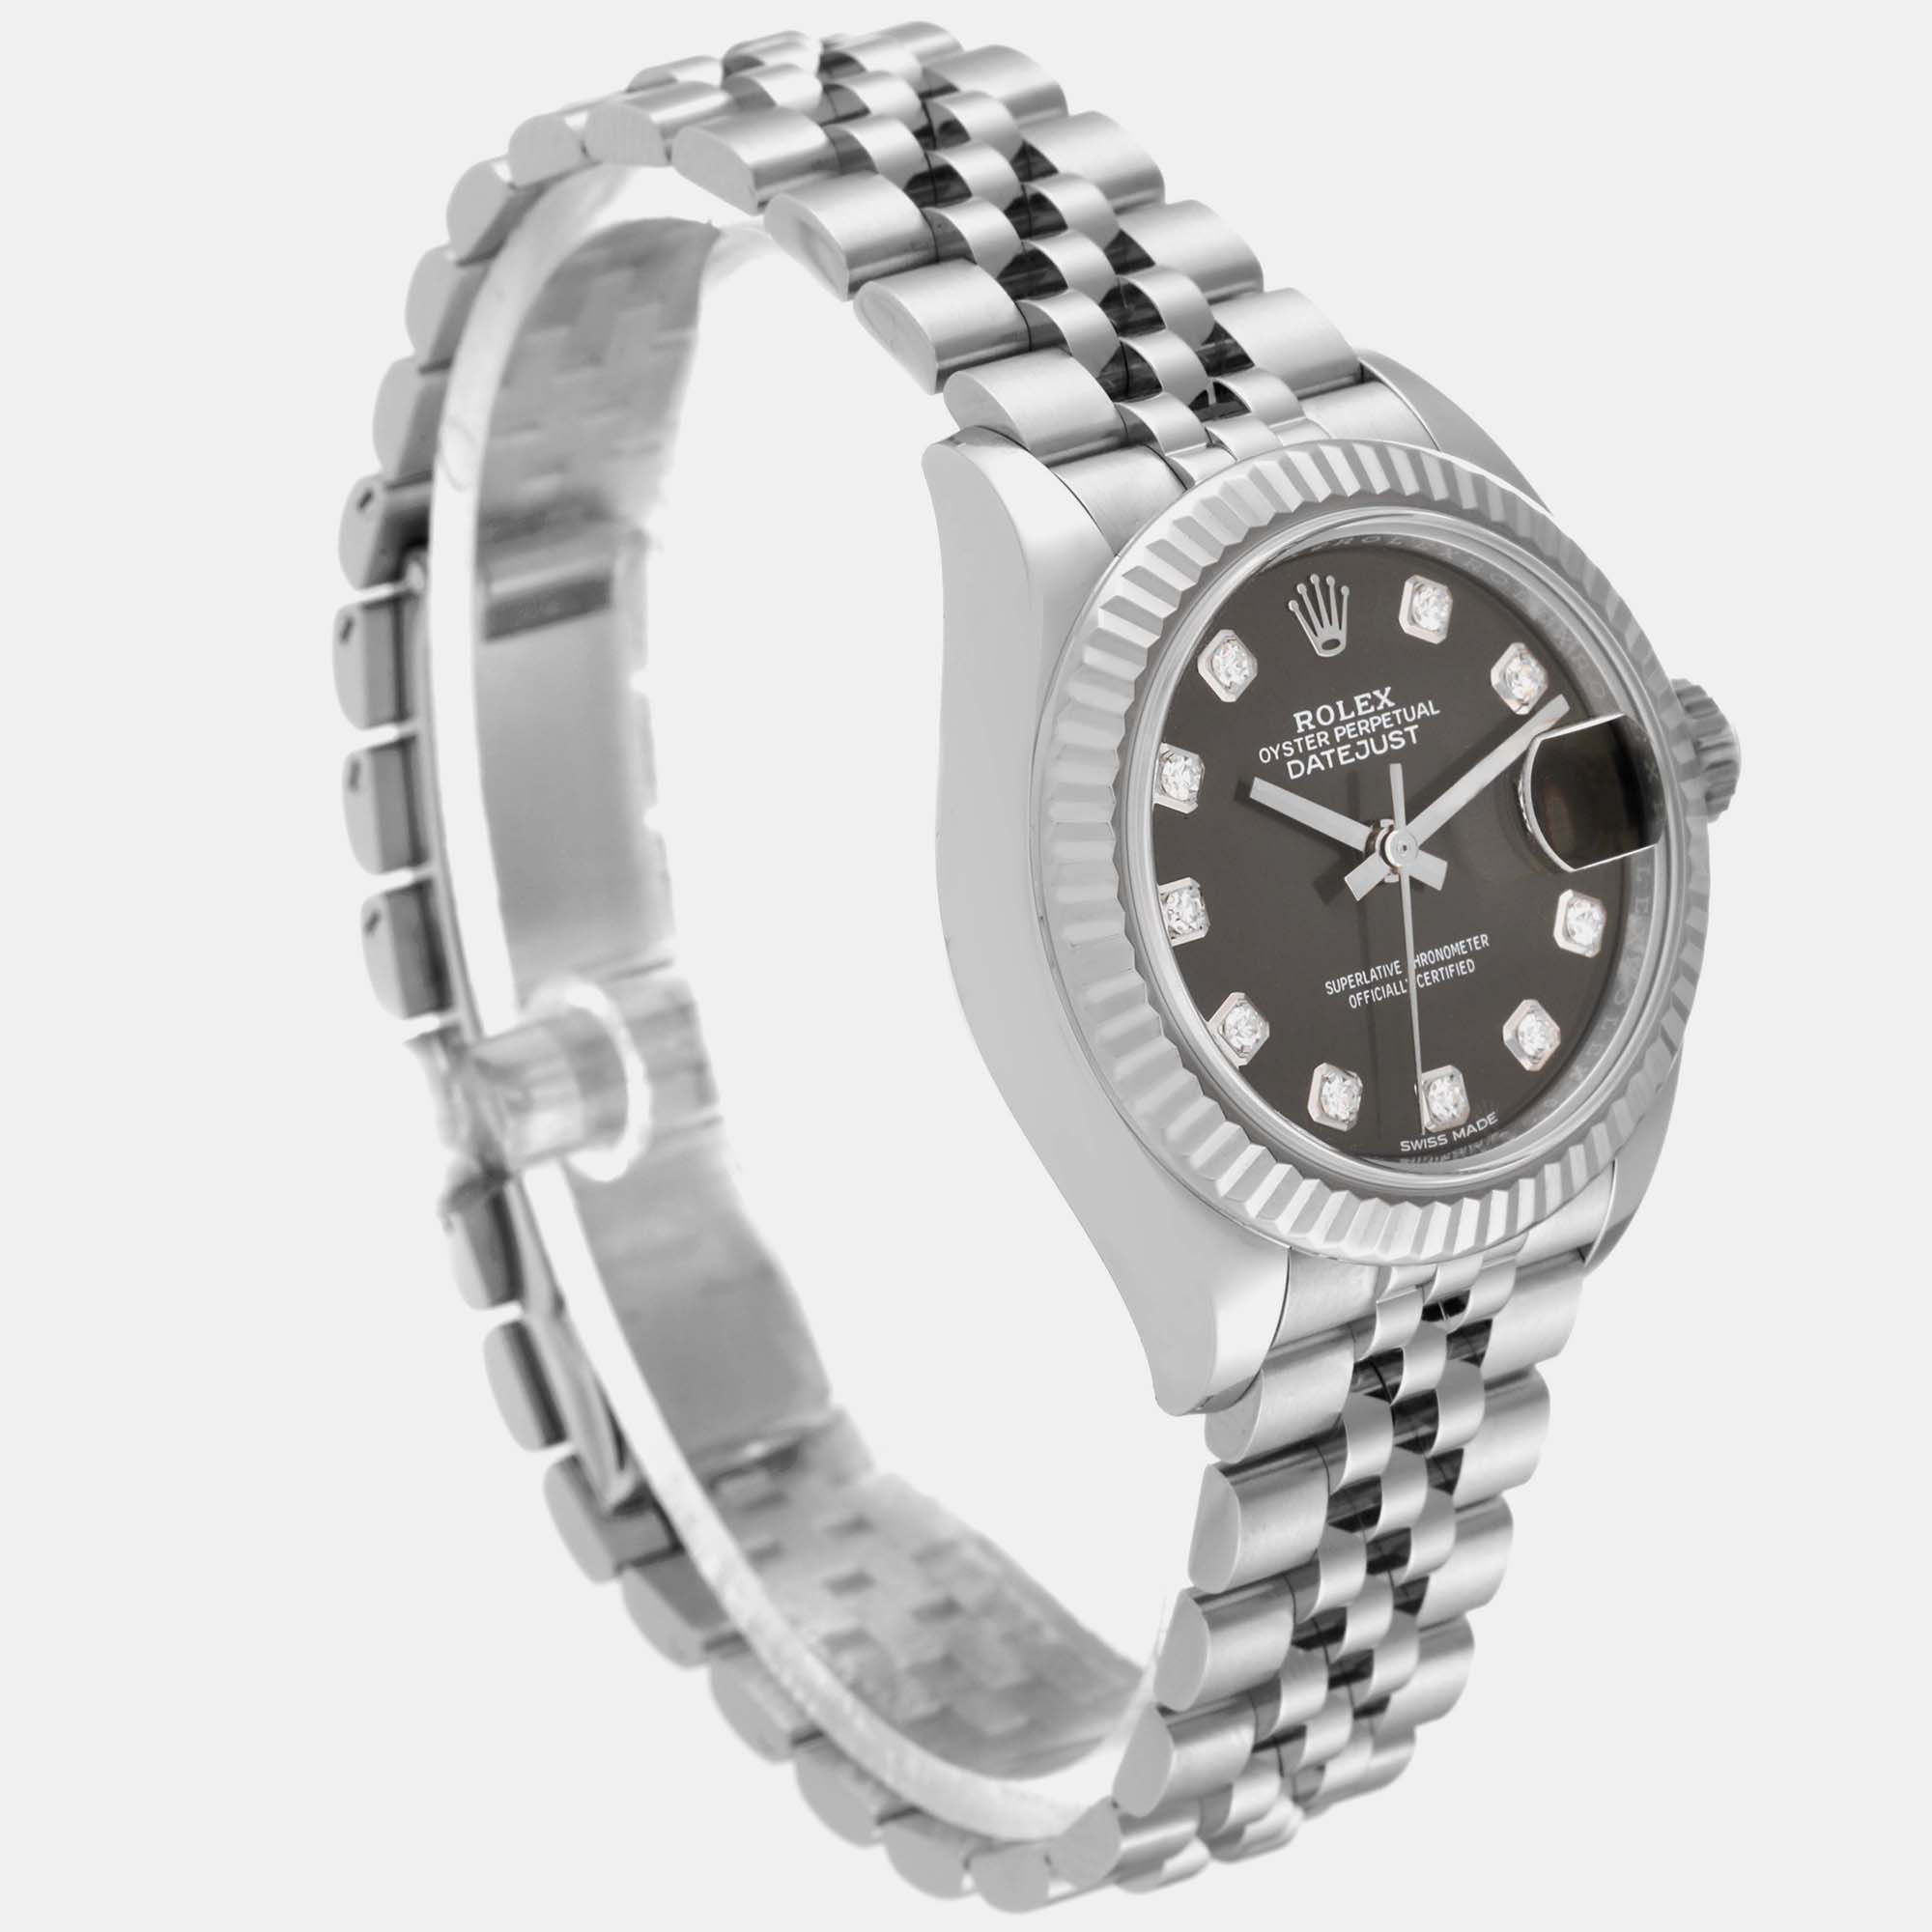 Rolex Datejust 28 Steel White Gold Dark Grey Diamond Dial Ladies Watch 279174